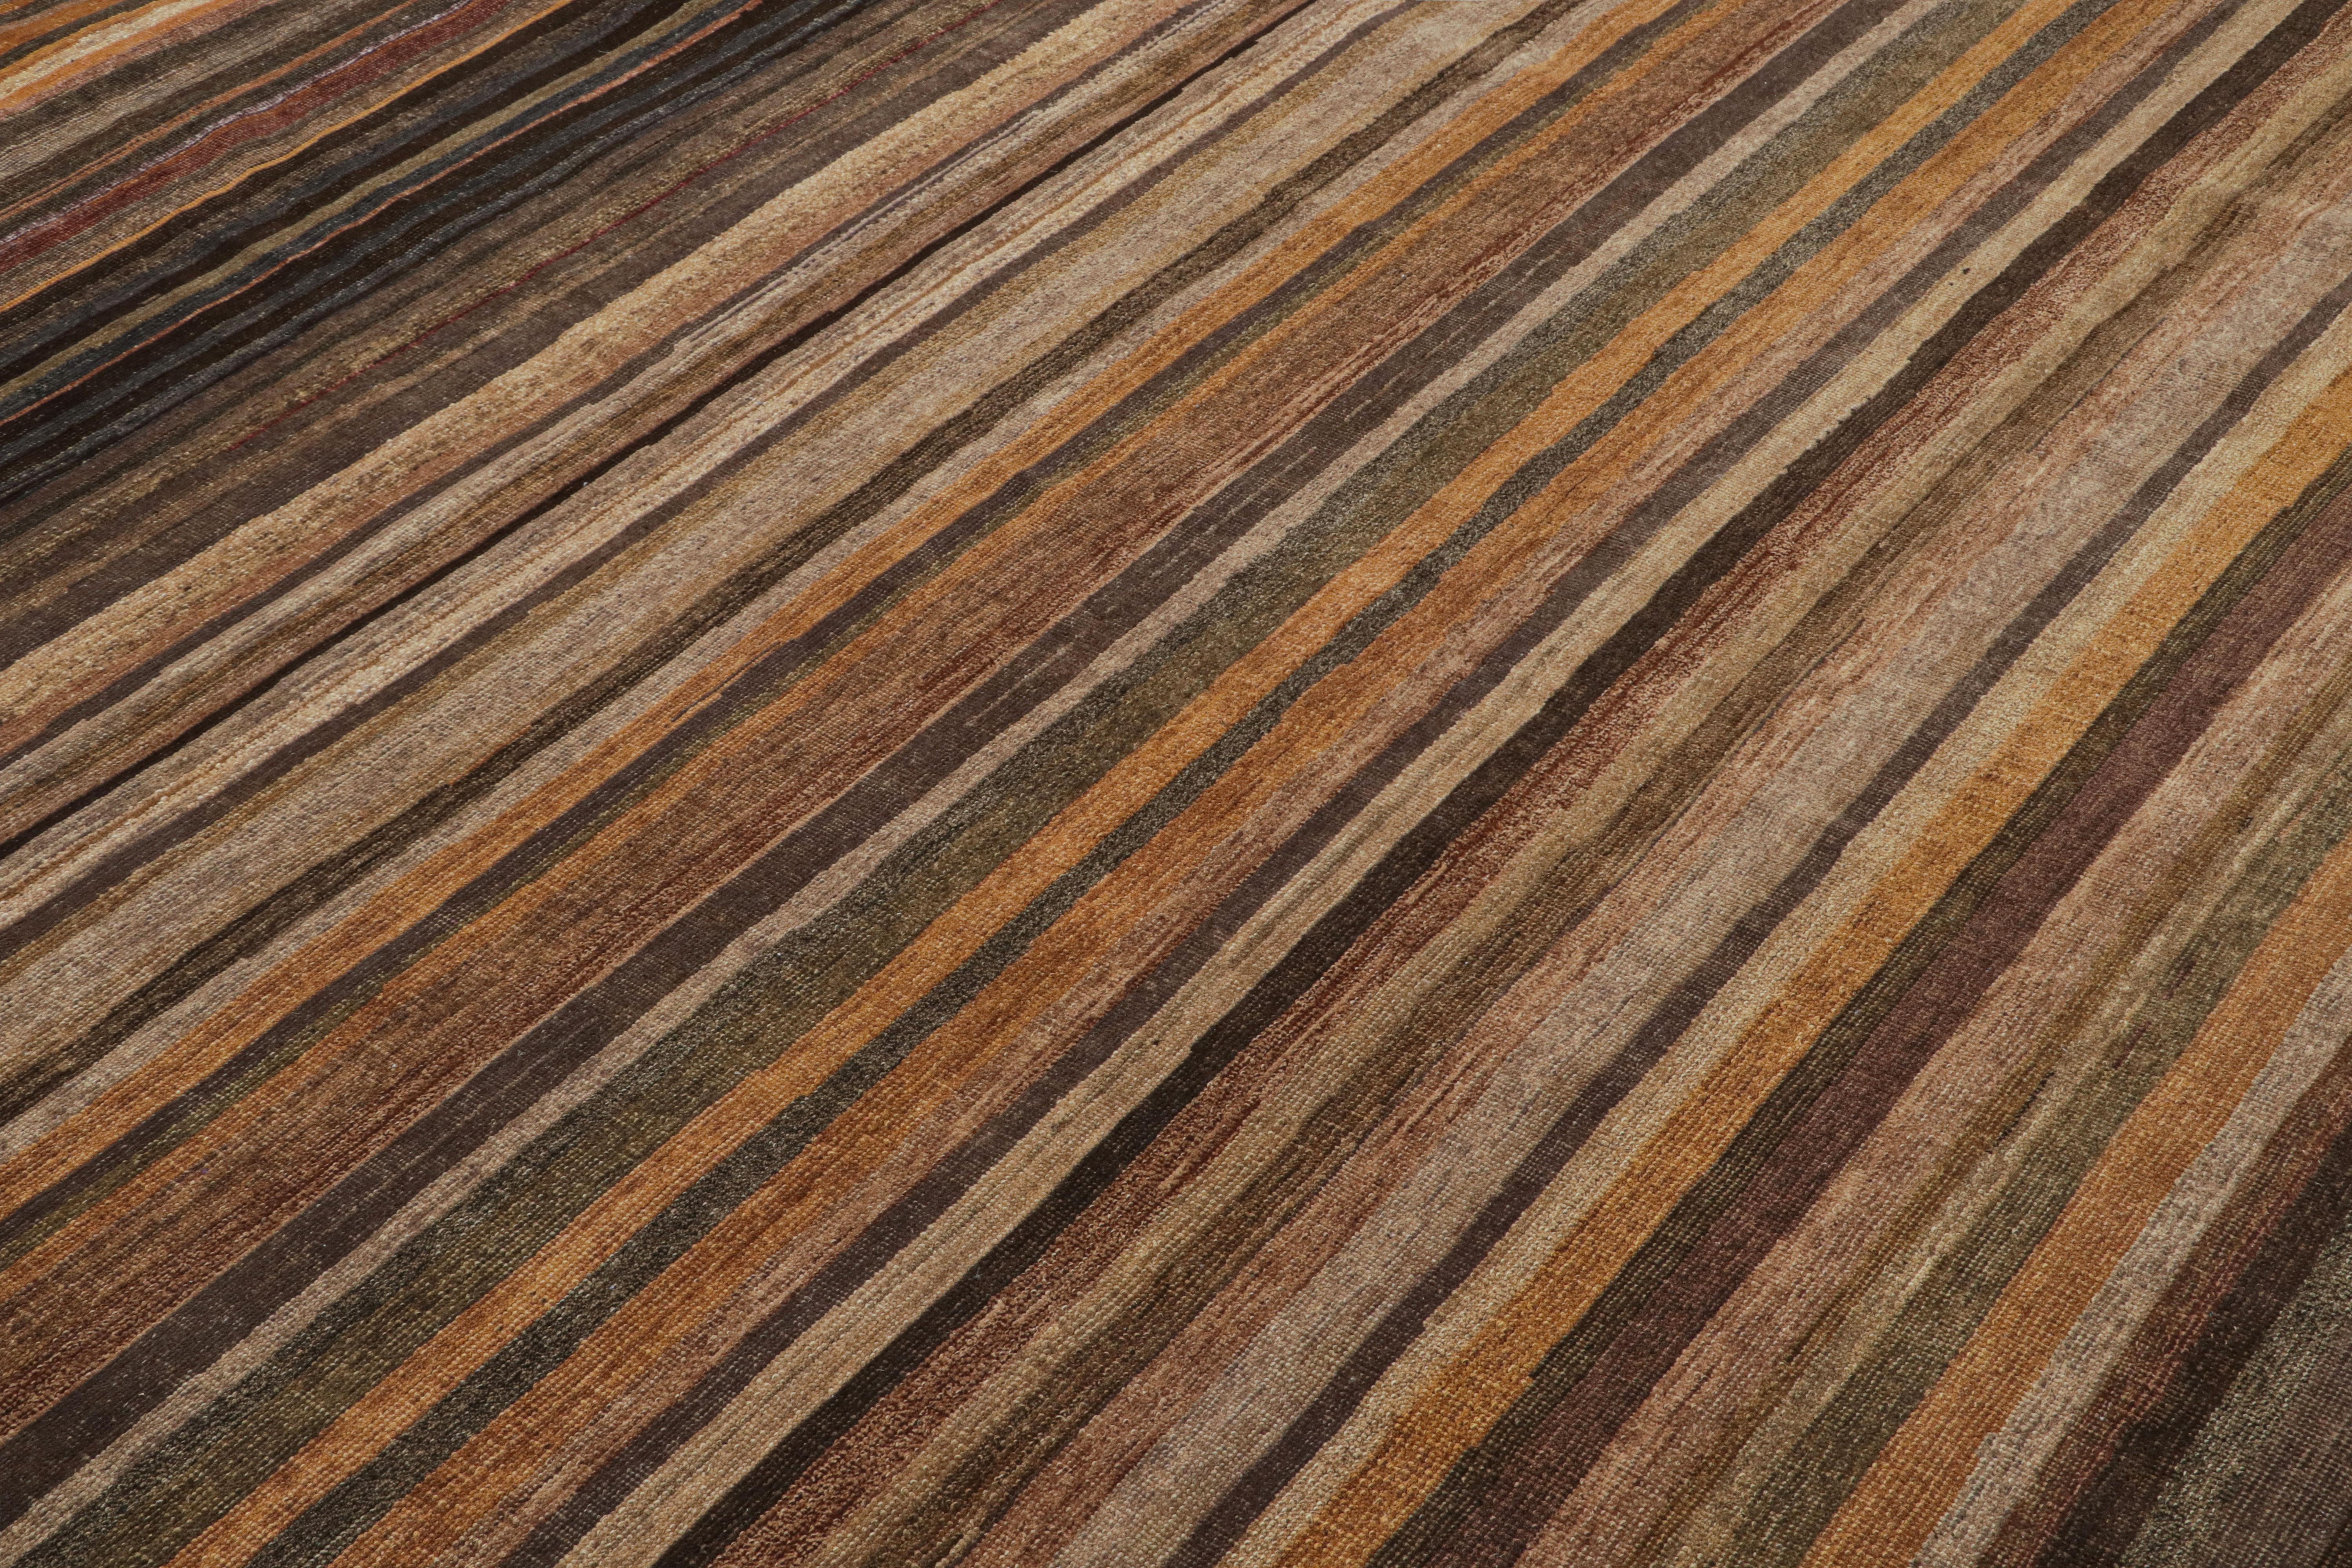 Ce tapis texturé 9x12 est un nouvel ajout à la Collection Texture of Color de Rug & Kilim.

Sur le Design :

Réalisé en laine nouée à la main, ce tapis reflète une nouvelle approche du thème de cette collection, notamment une teinture végétale comme